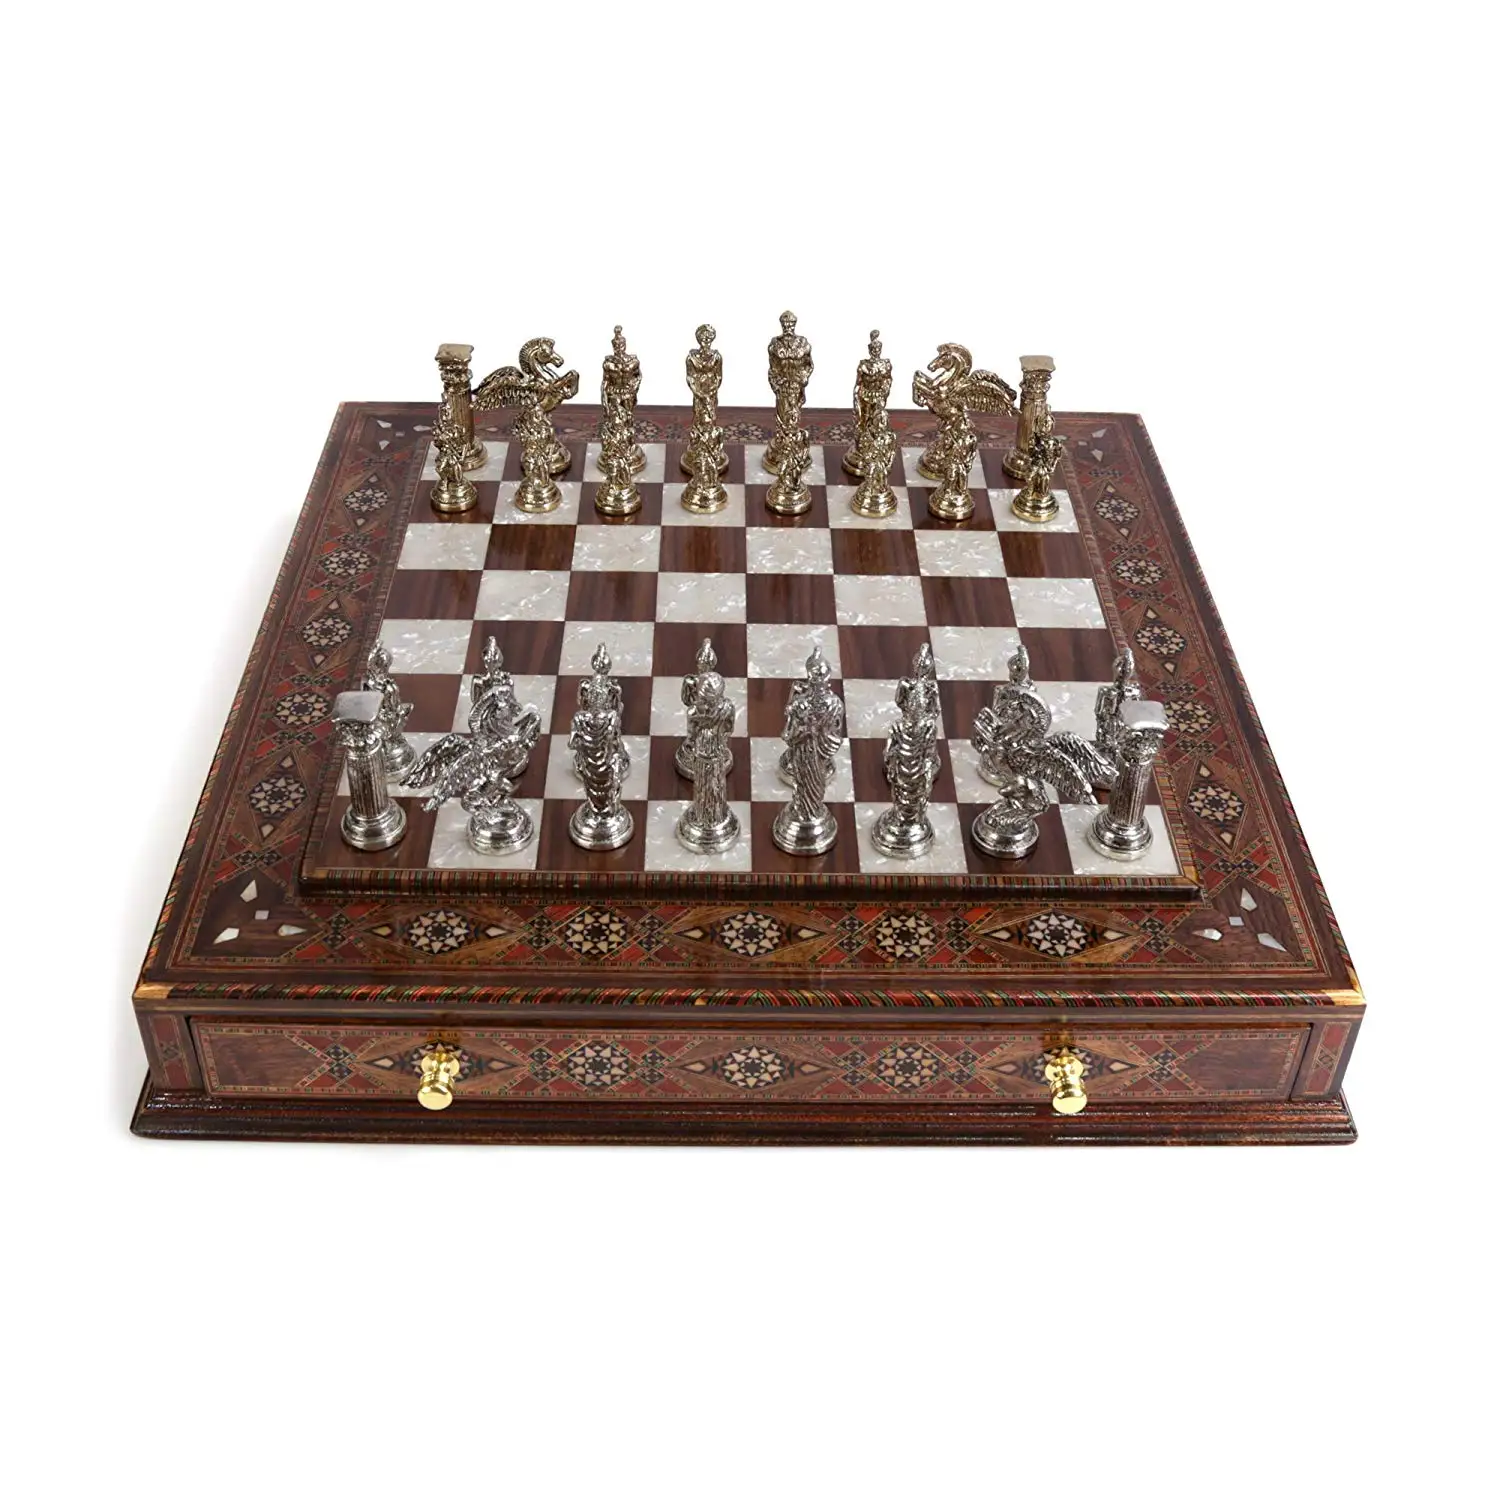 

Металлический Шахматный набор, мифологический Пег, предметы ручной работы, натуральная твердая деревянная доска, оригинальный жемчуг на до...